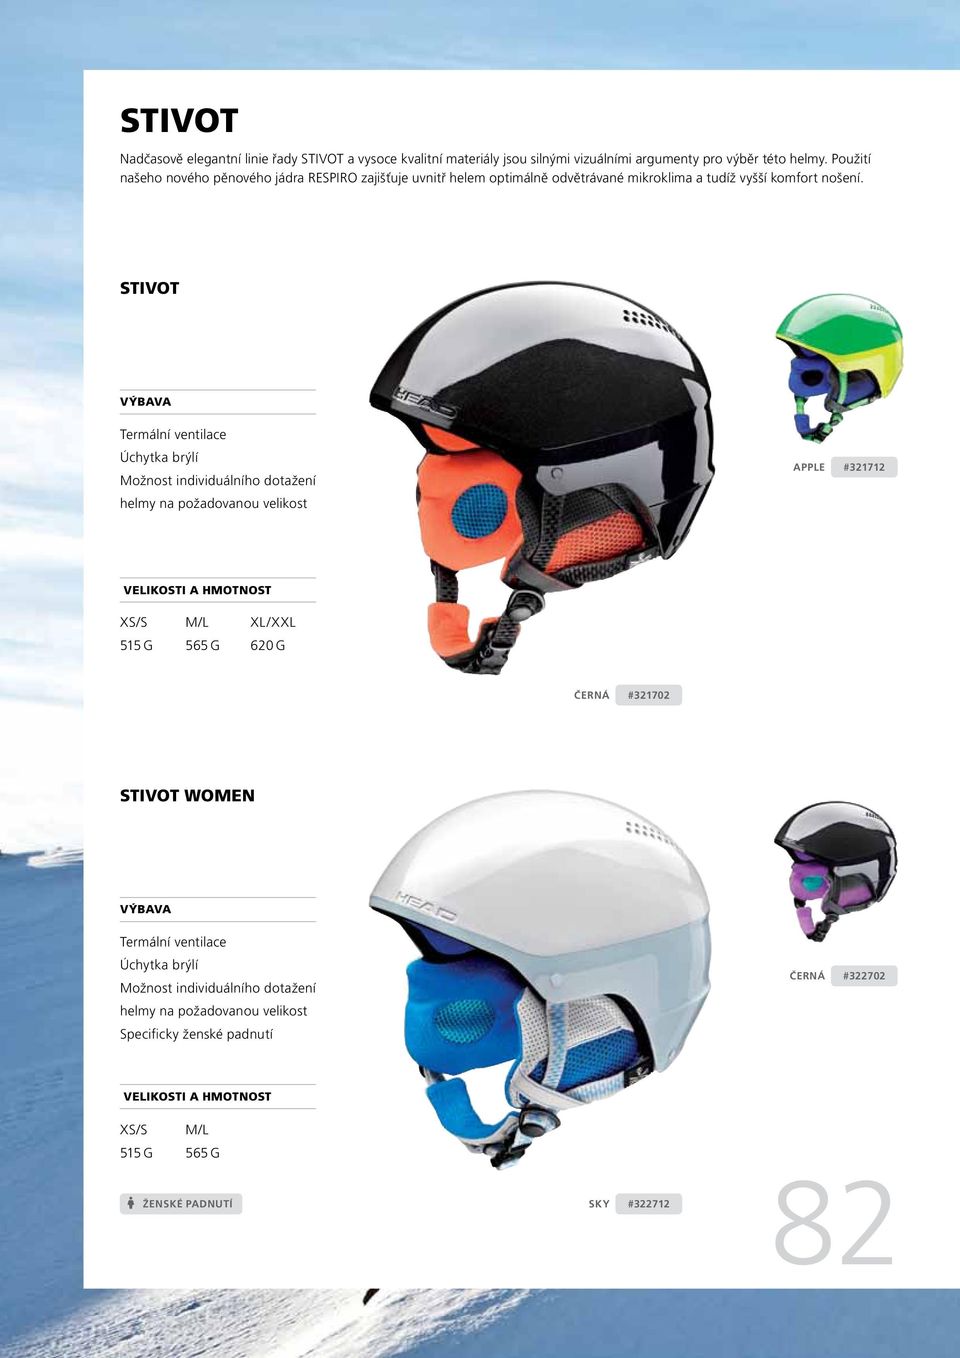 STIVOT Termální ventilace Úchytka brýlí Možnost individuálního dotažení helmy na požadovanou velikost APPLE #321712 VELIKOSTI A HMOTNOST XS/S 515 G M/L 565 G XL /